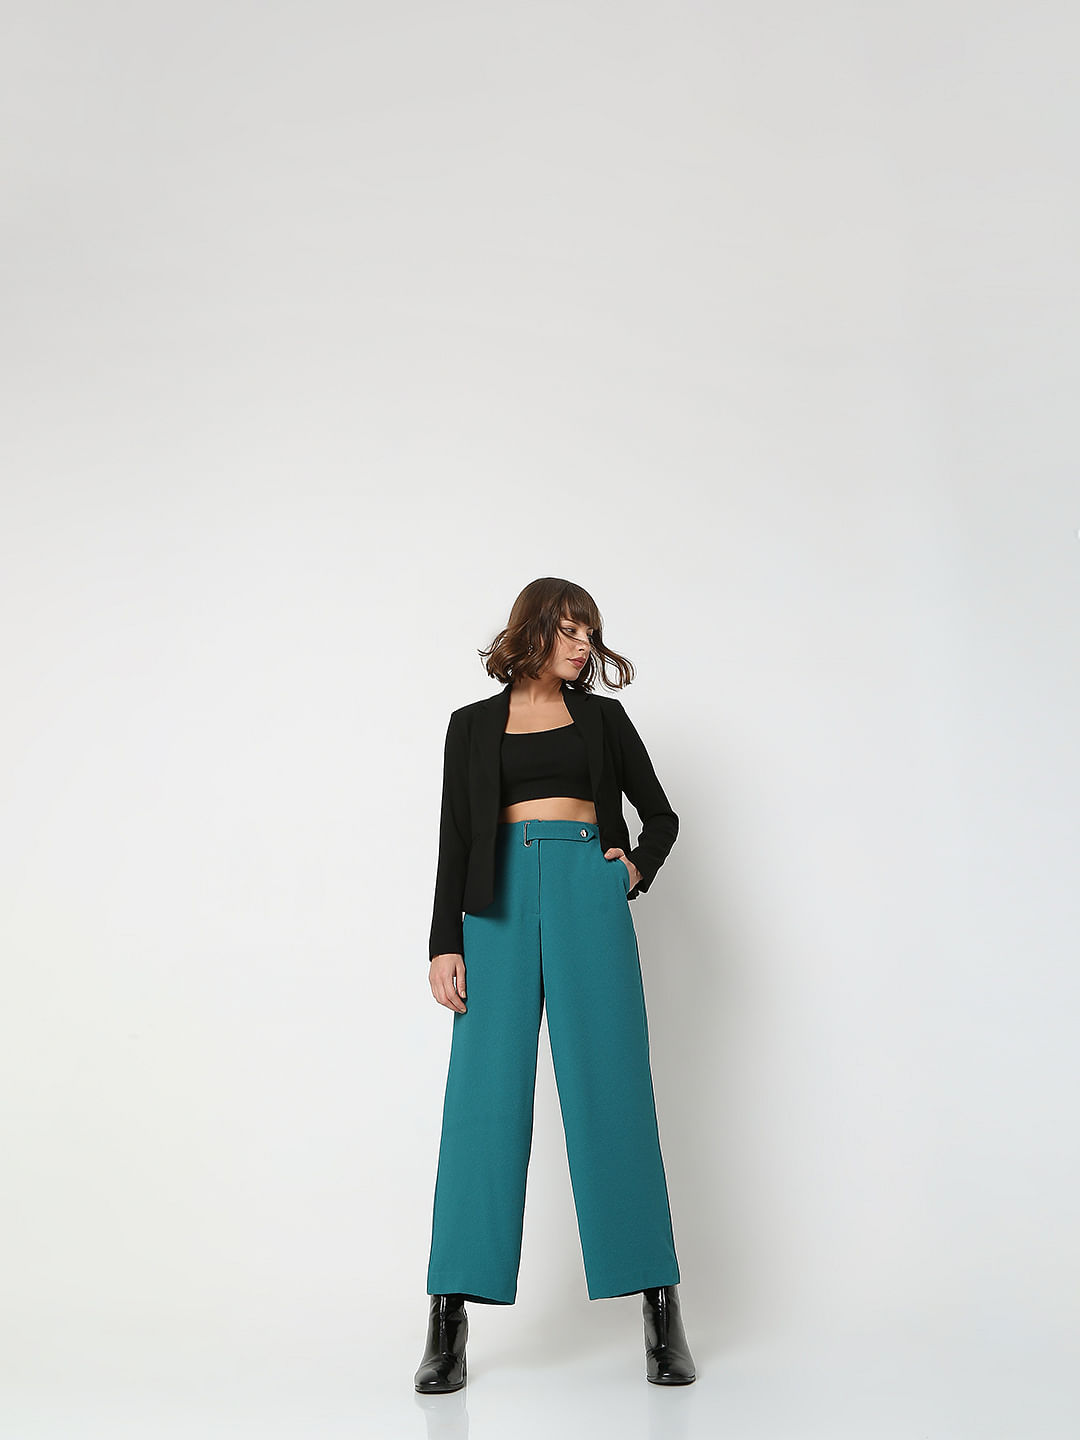 Buy Beige Trousers  Pants for Women by GAP Online  Ajiocom